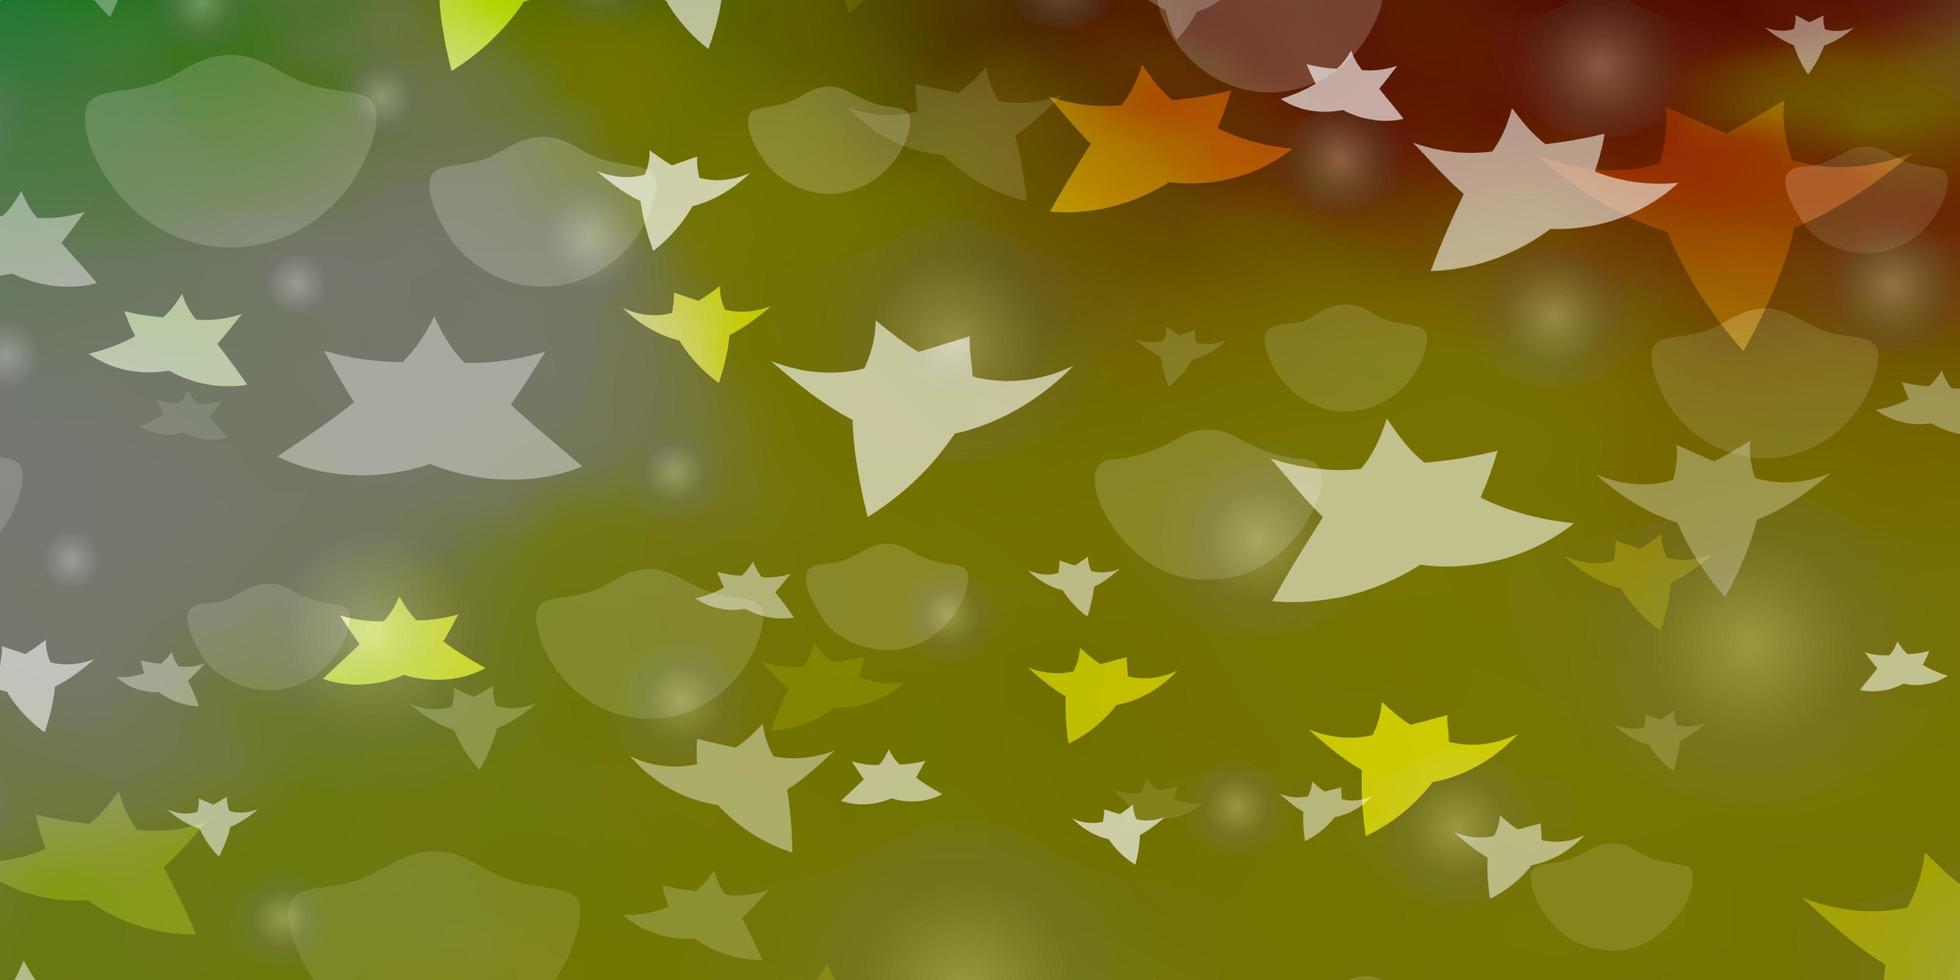 ljusgrön gul vektormönster med cirklar stjärnor abstrakt illustration med färgglada fläckar stjärnor design för tapet tyg tillverkare vektor